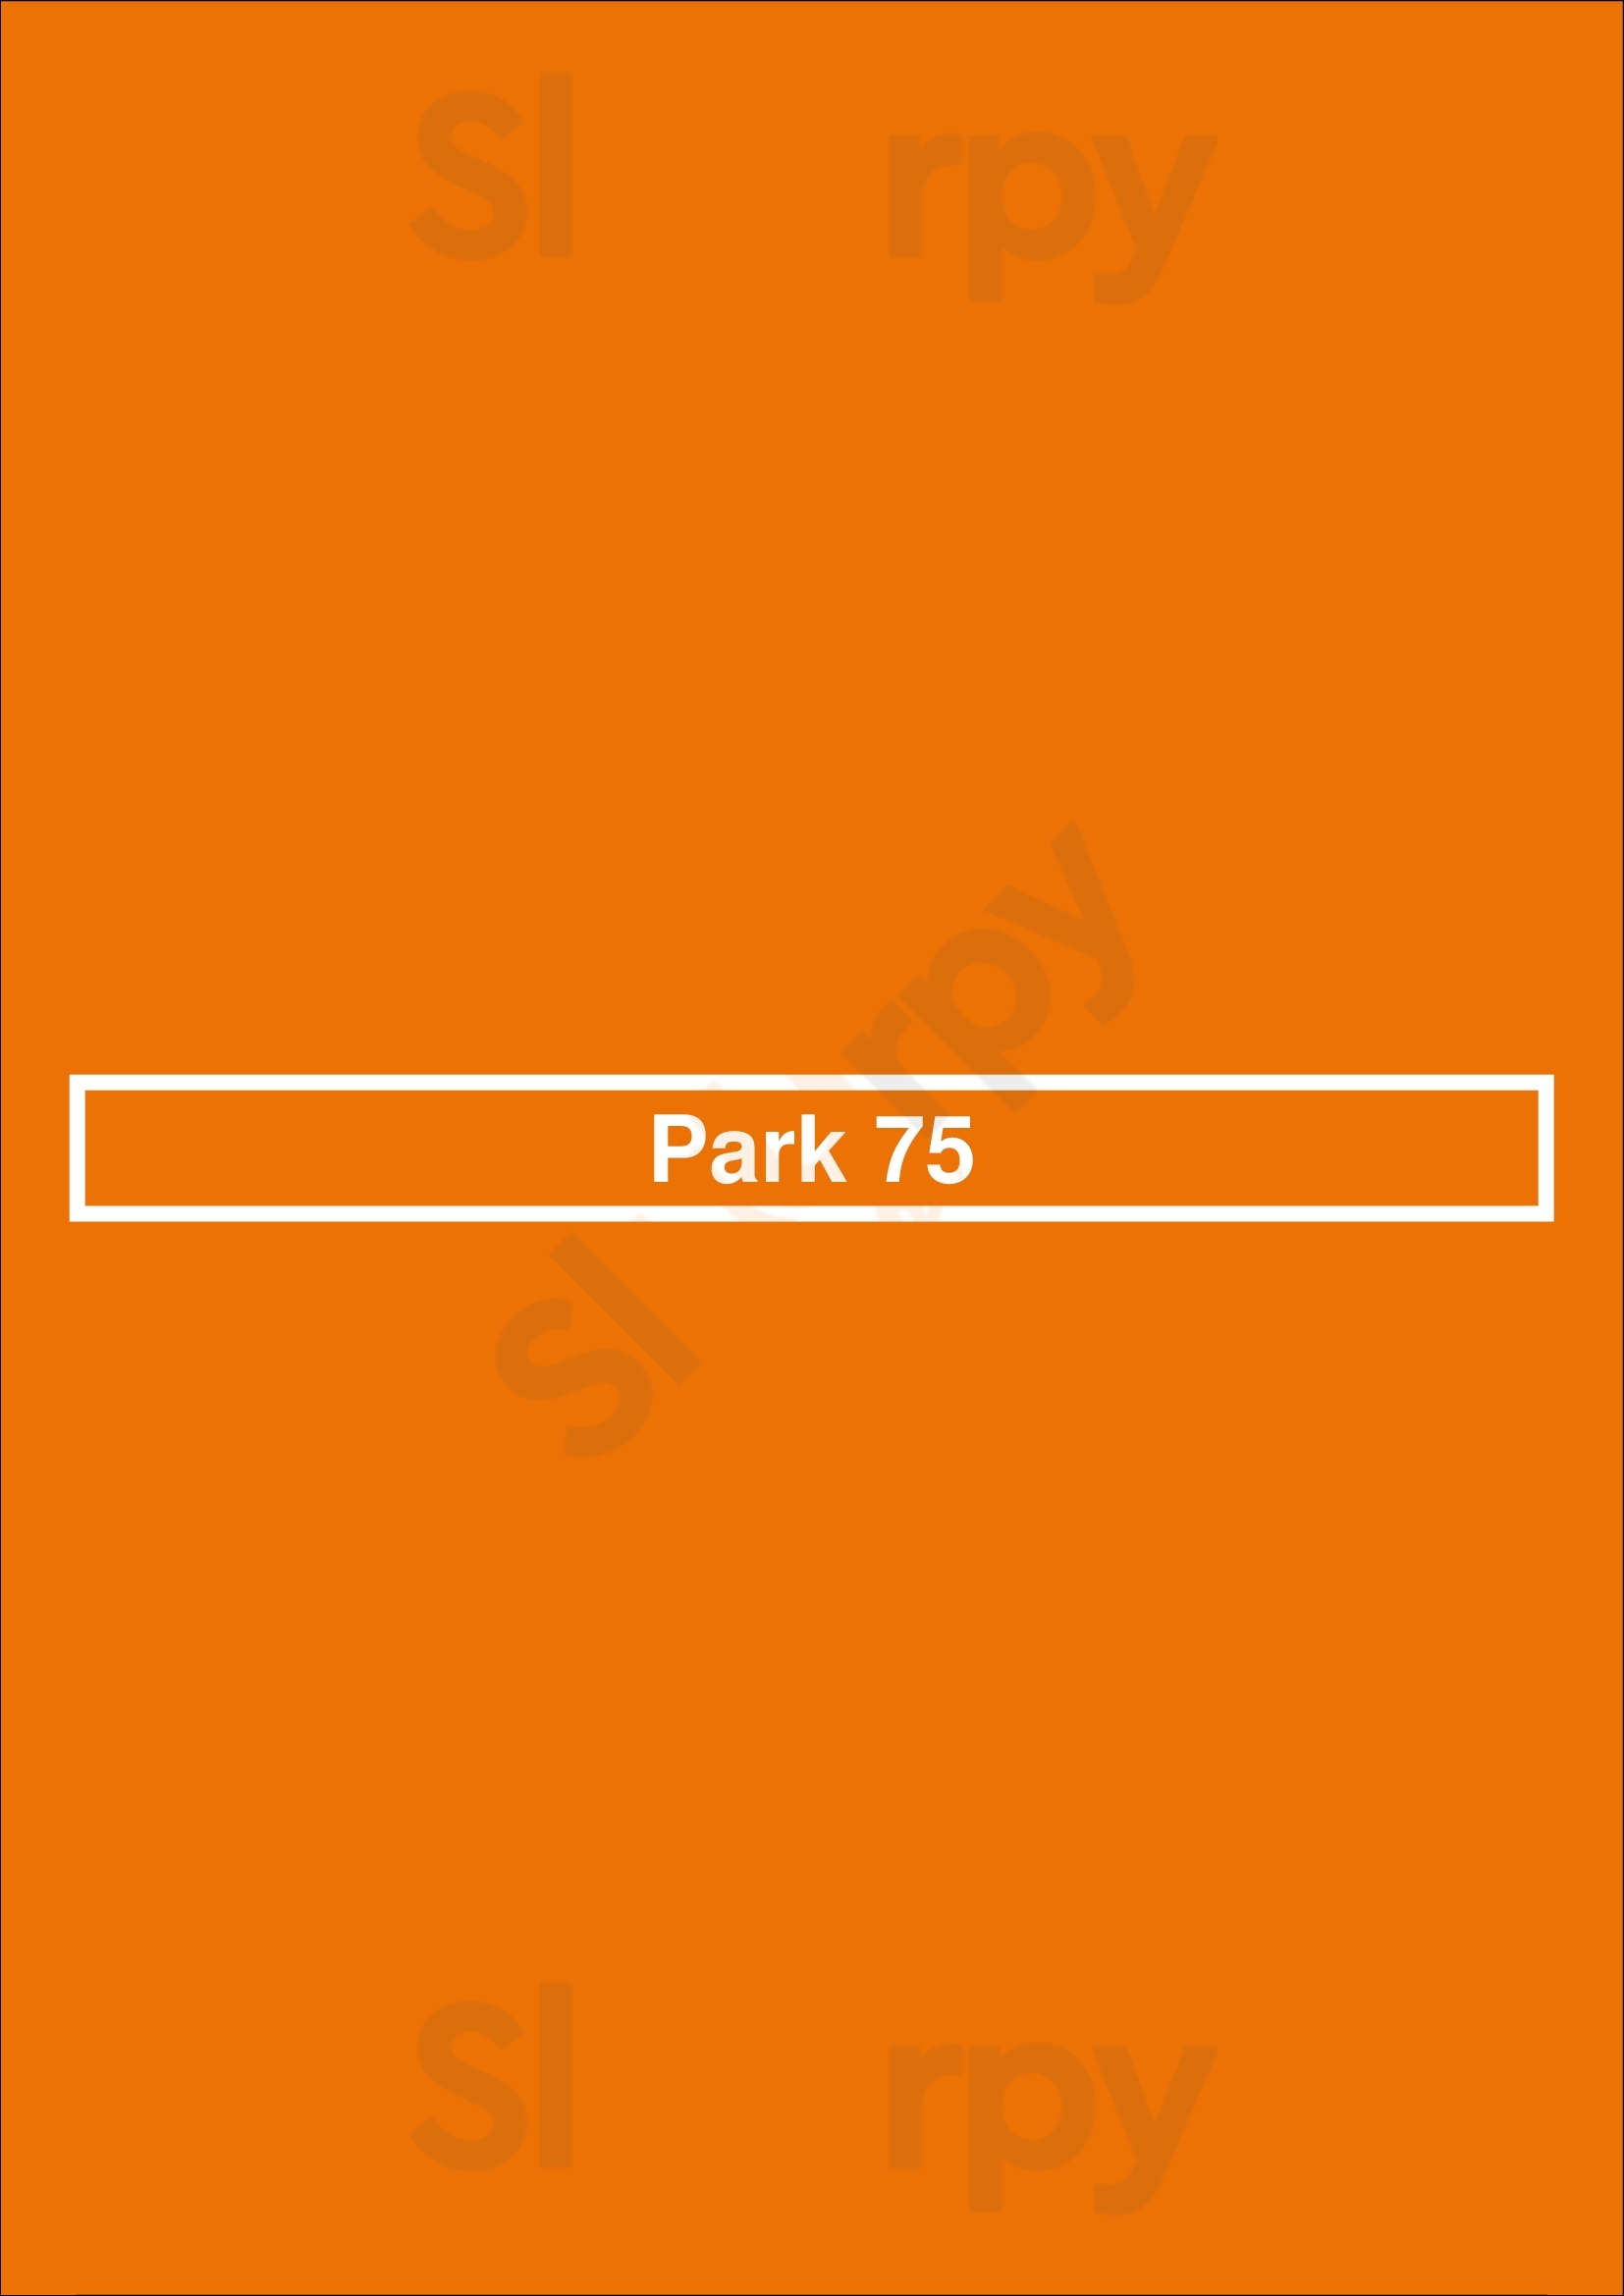 Park 75 Atlanta Menu - 1